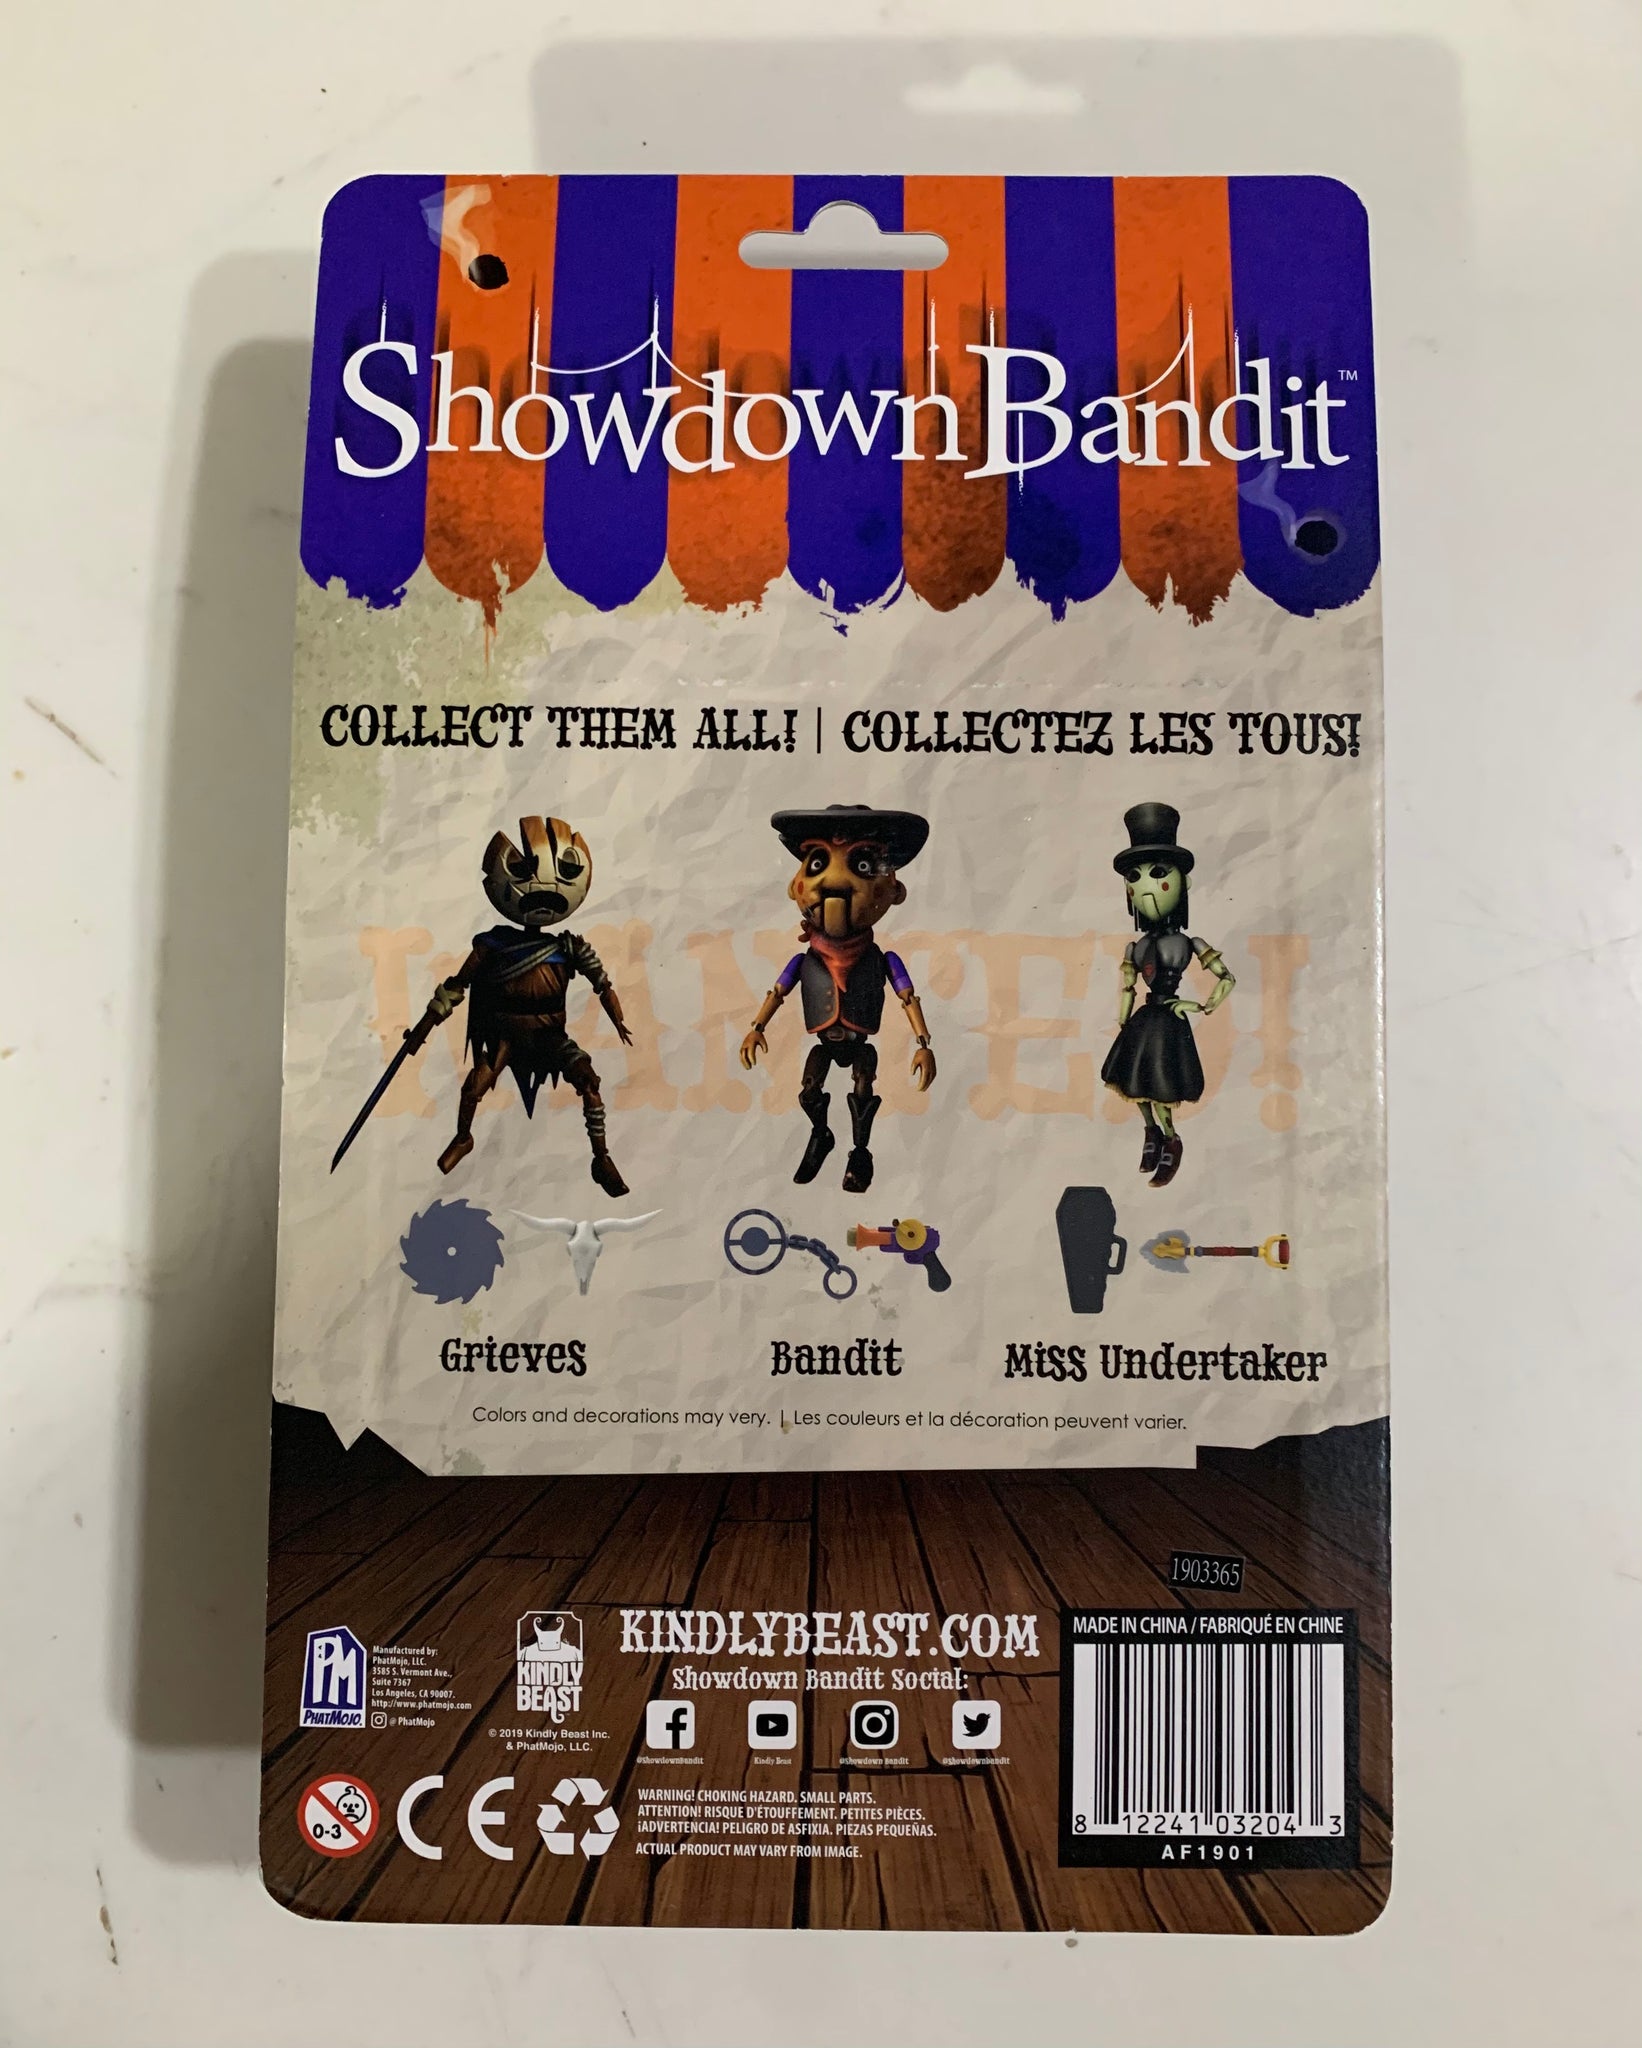 Showdown Bandit - Bandit Action Figure – Cove Toy House